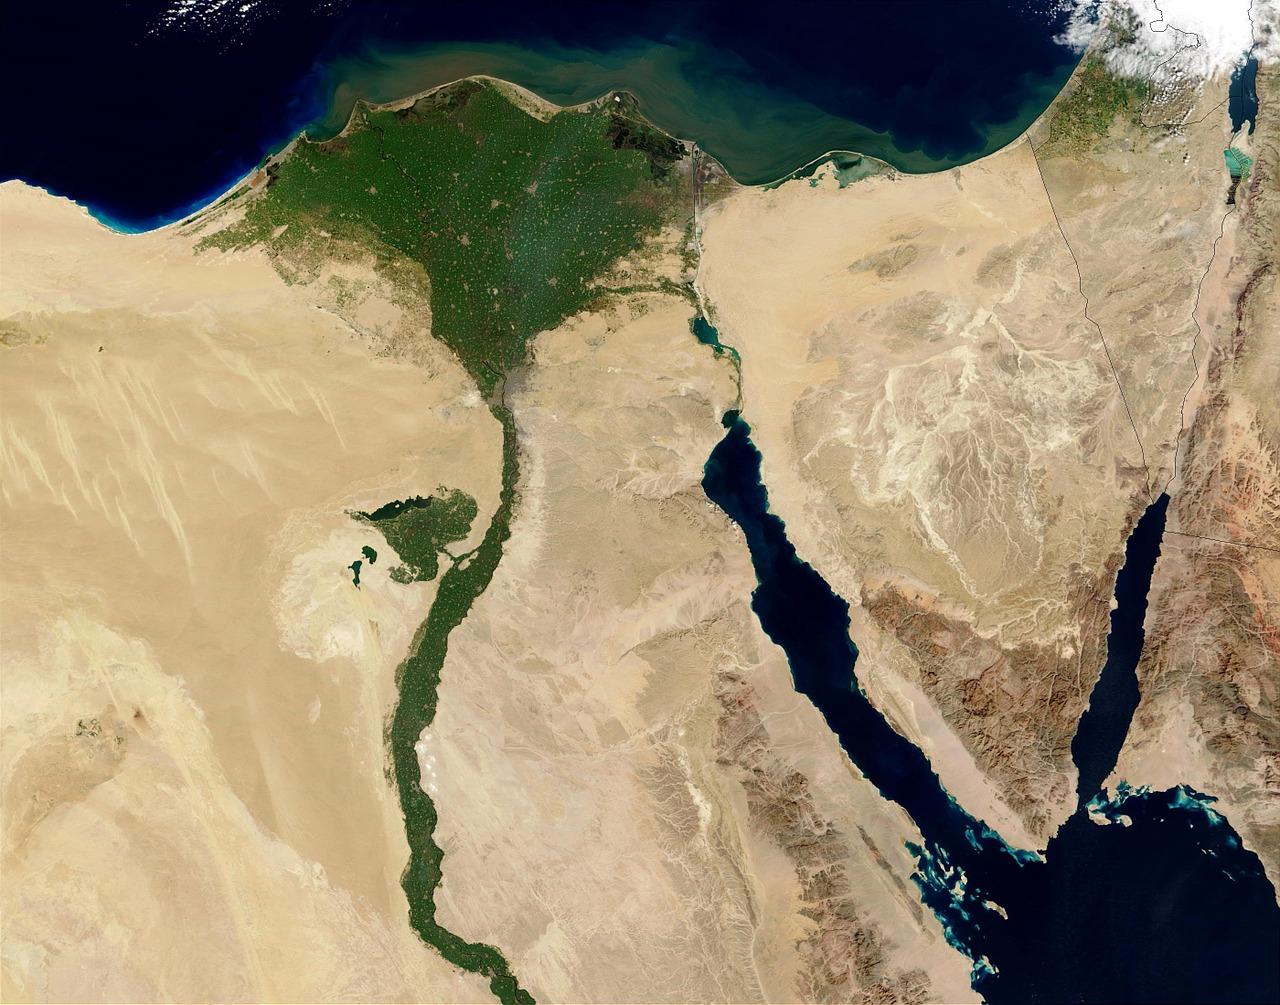 阿拉伯之春后,埃及和突尼斯政治走向的不同及